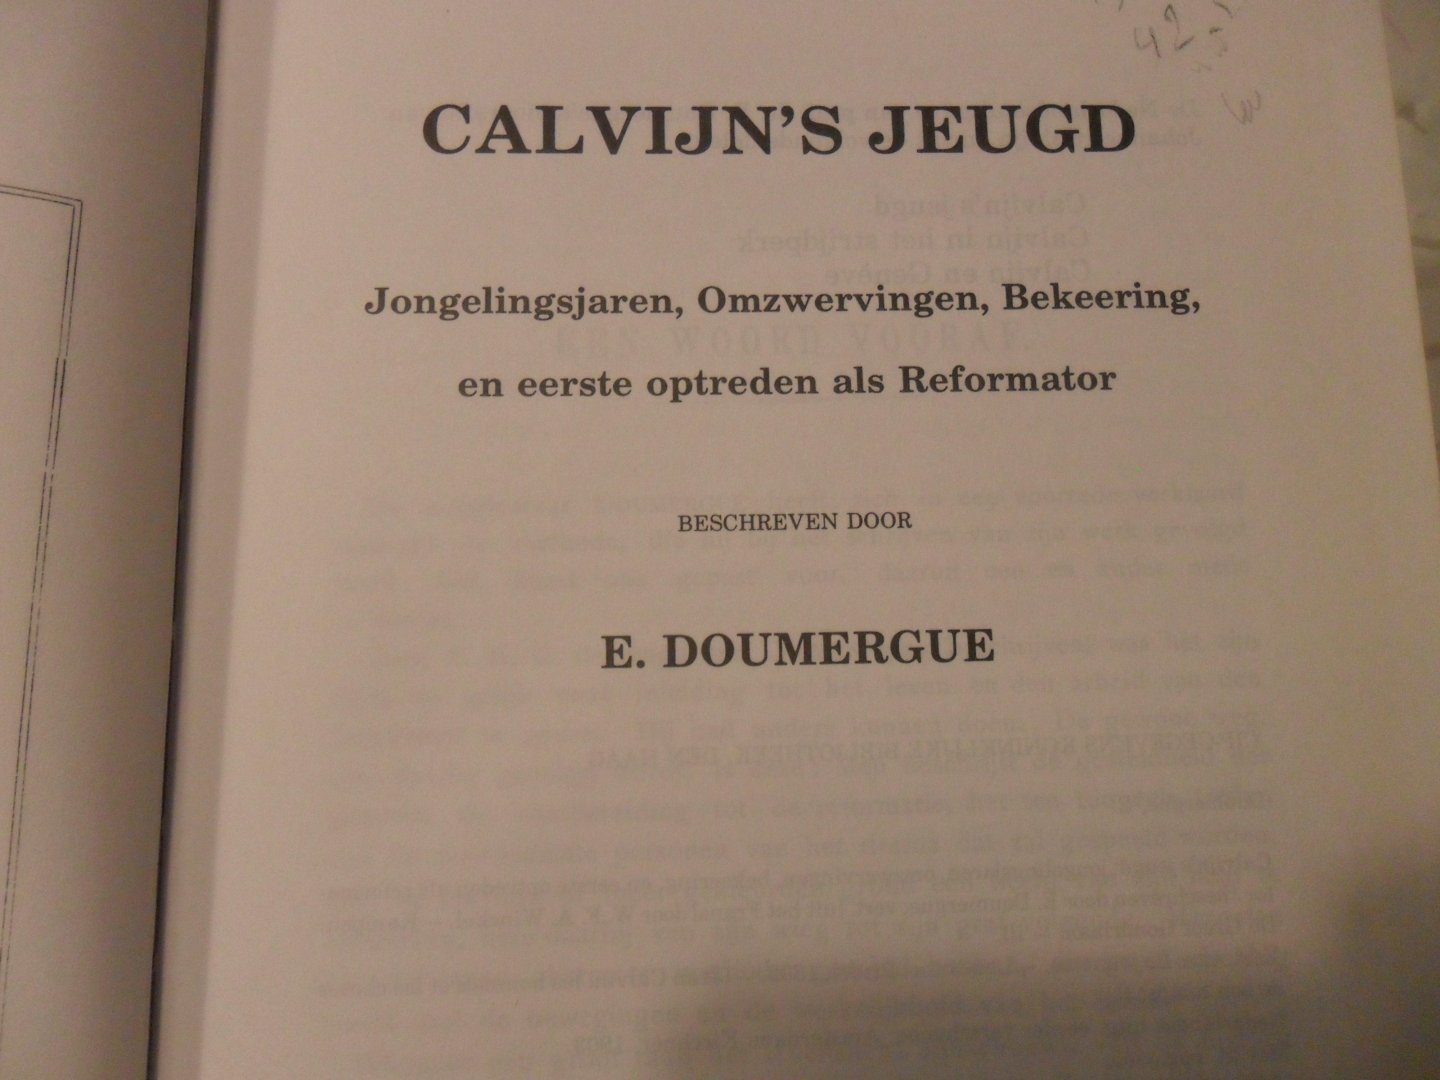 Doumergue E. - Calvijn's jeugd